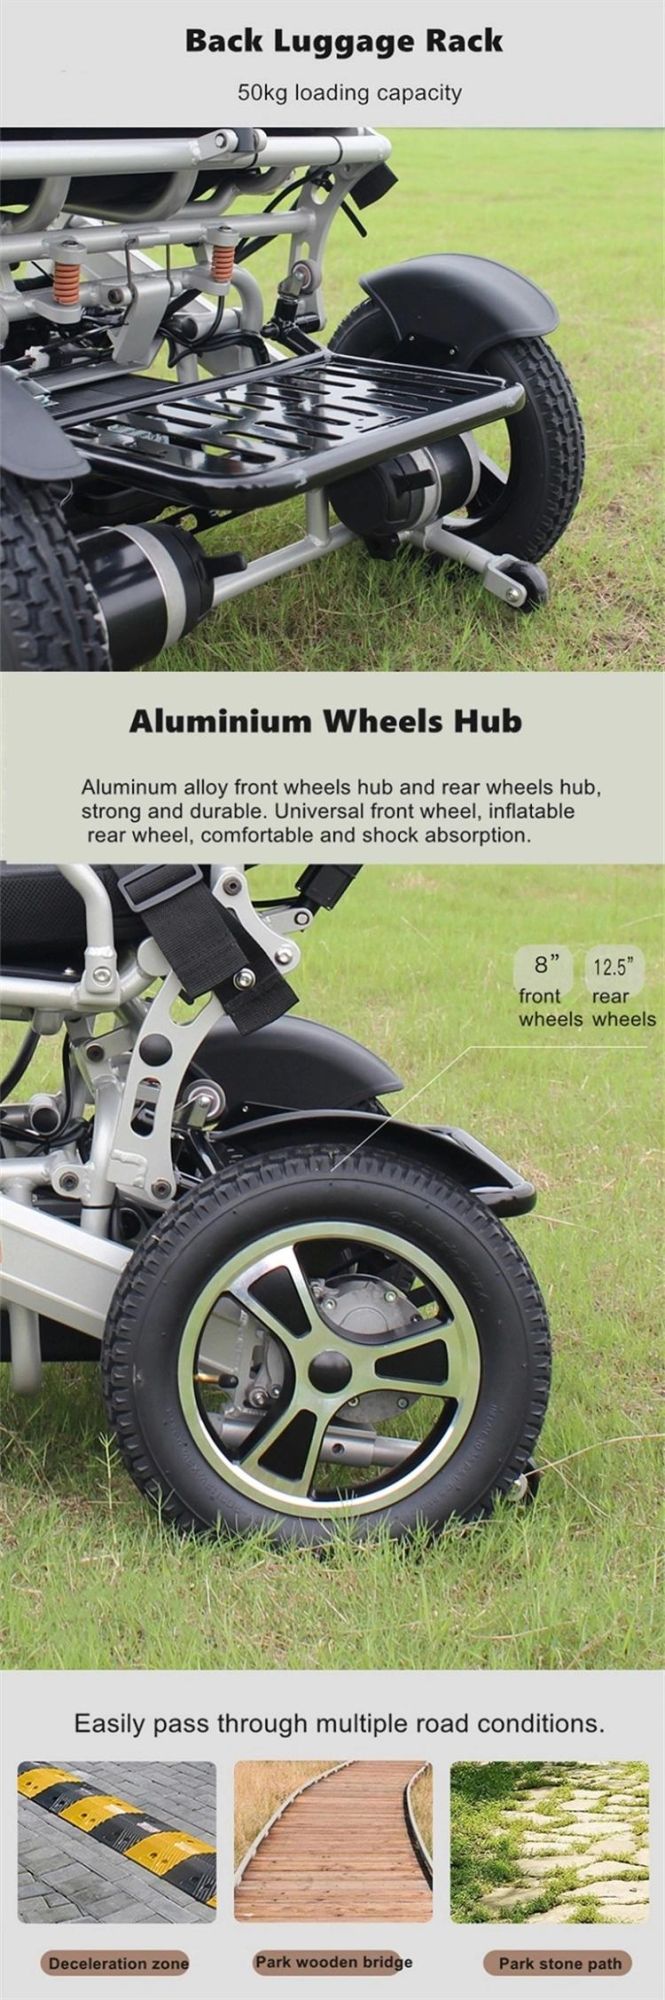 24V30ah Lithium Battery Elder Folding Elektrorollstuhl electric Wheelchair for Adult